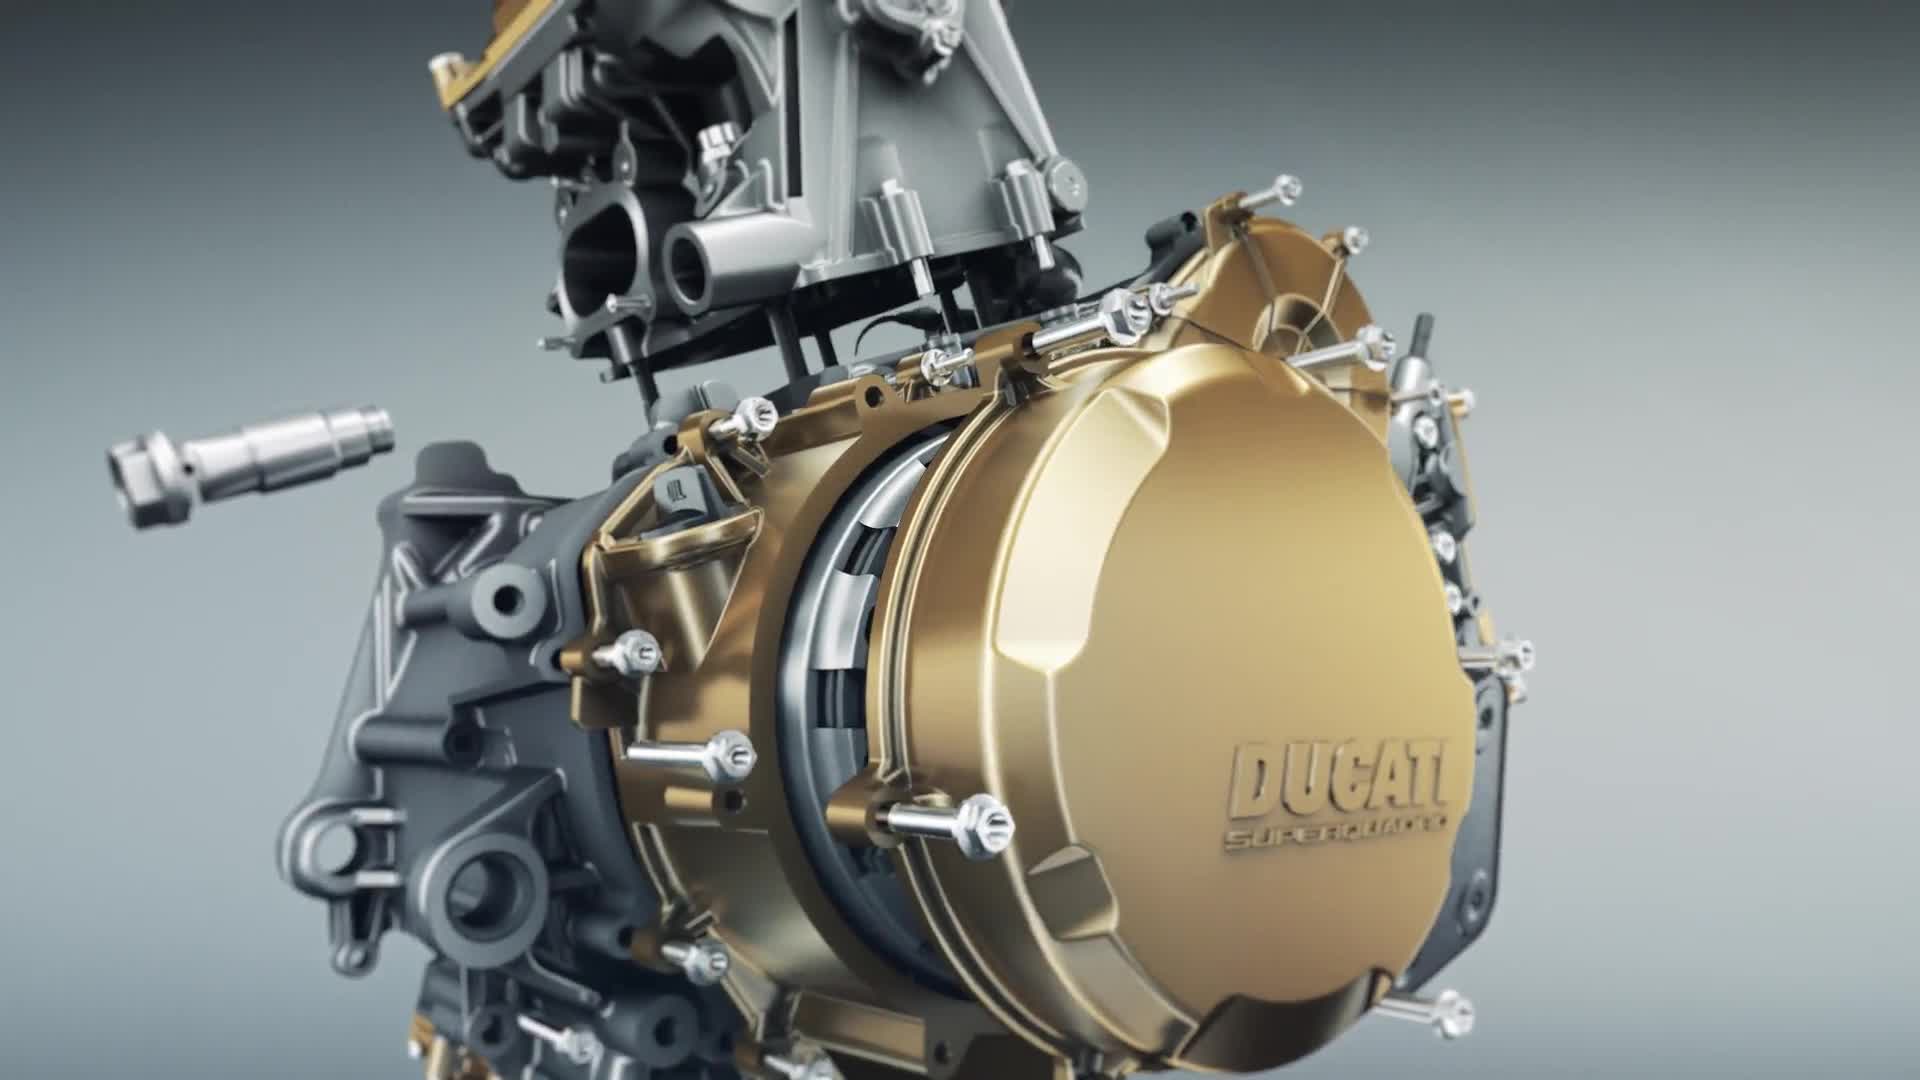 Ducati Superquadro Engine Video